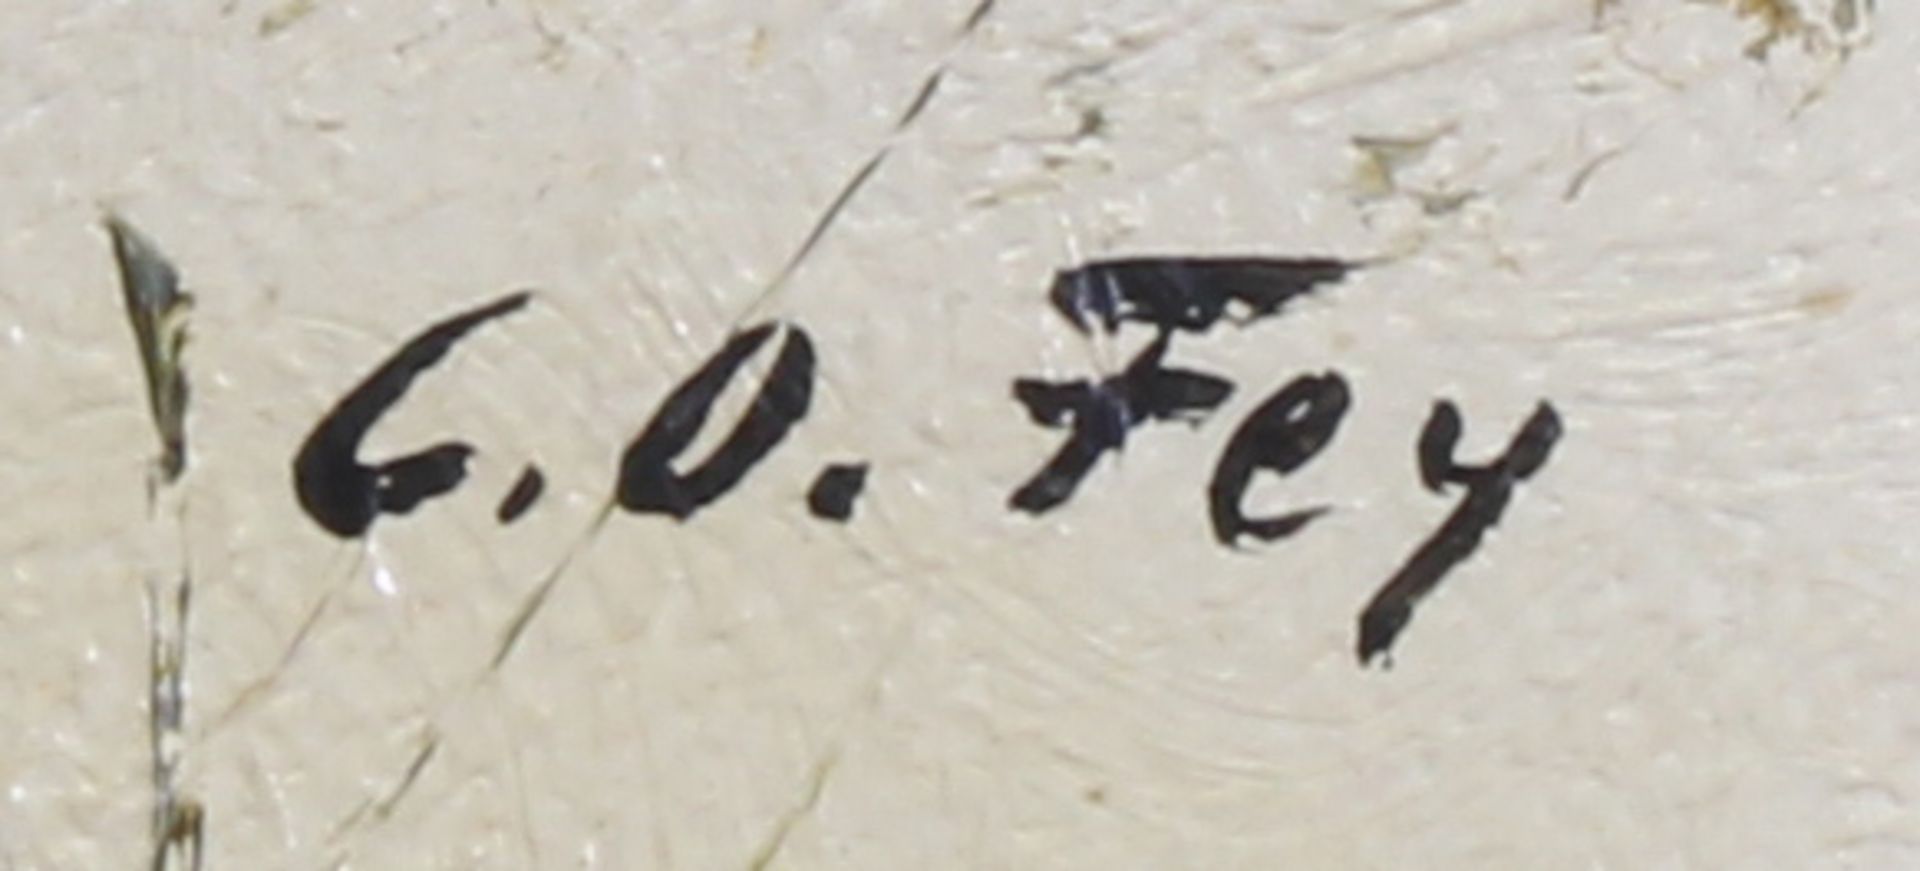 Fey, C.O. (19./20. Jh.), 2 Gemälde, Öl auf Karton, jeweils signiert unten rechts C.O. Fey, verso - Bild 2 aus 8